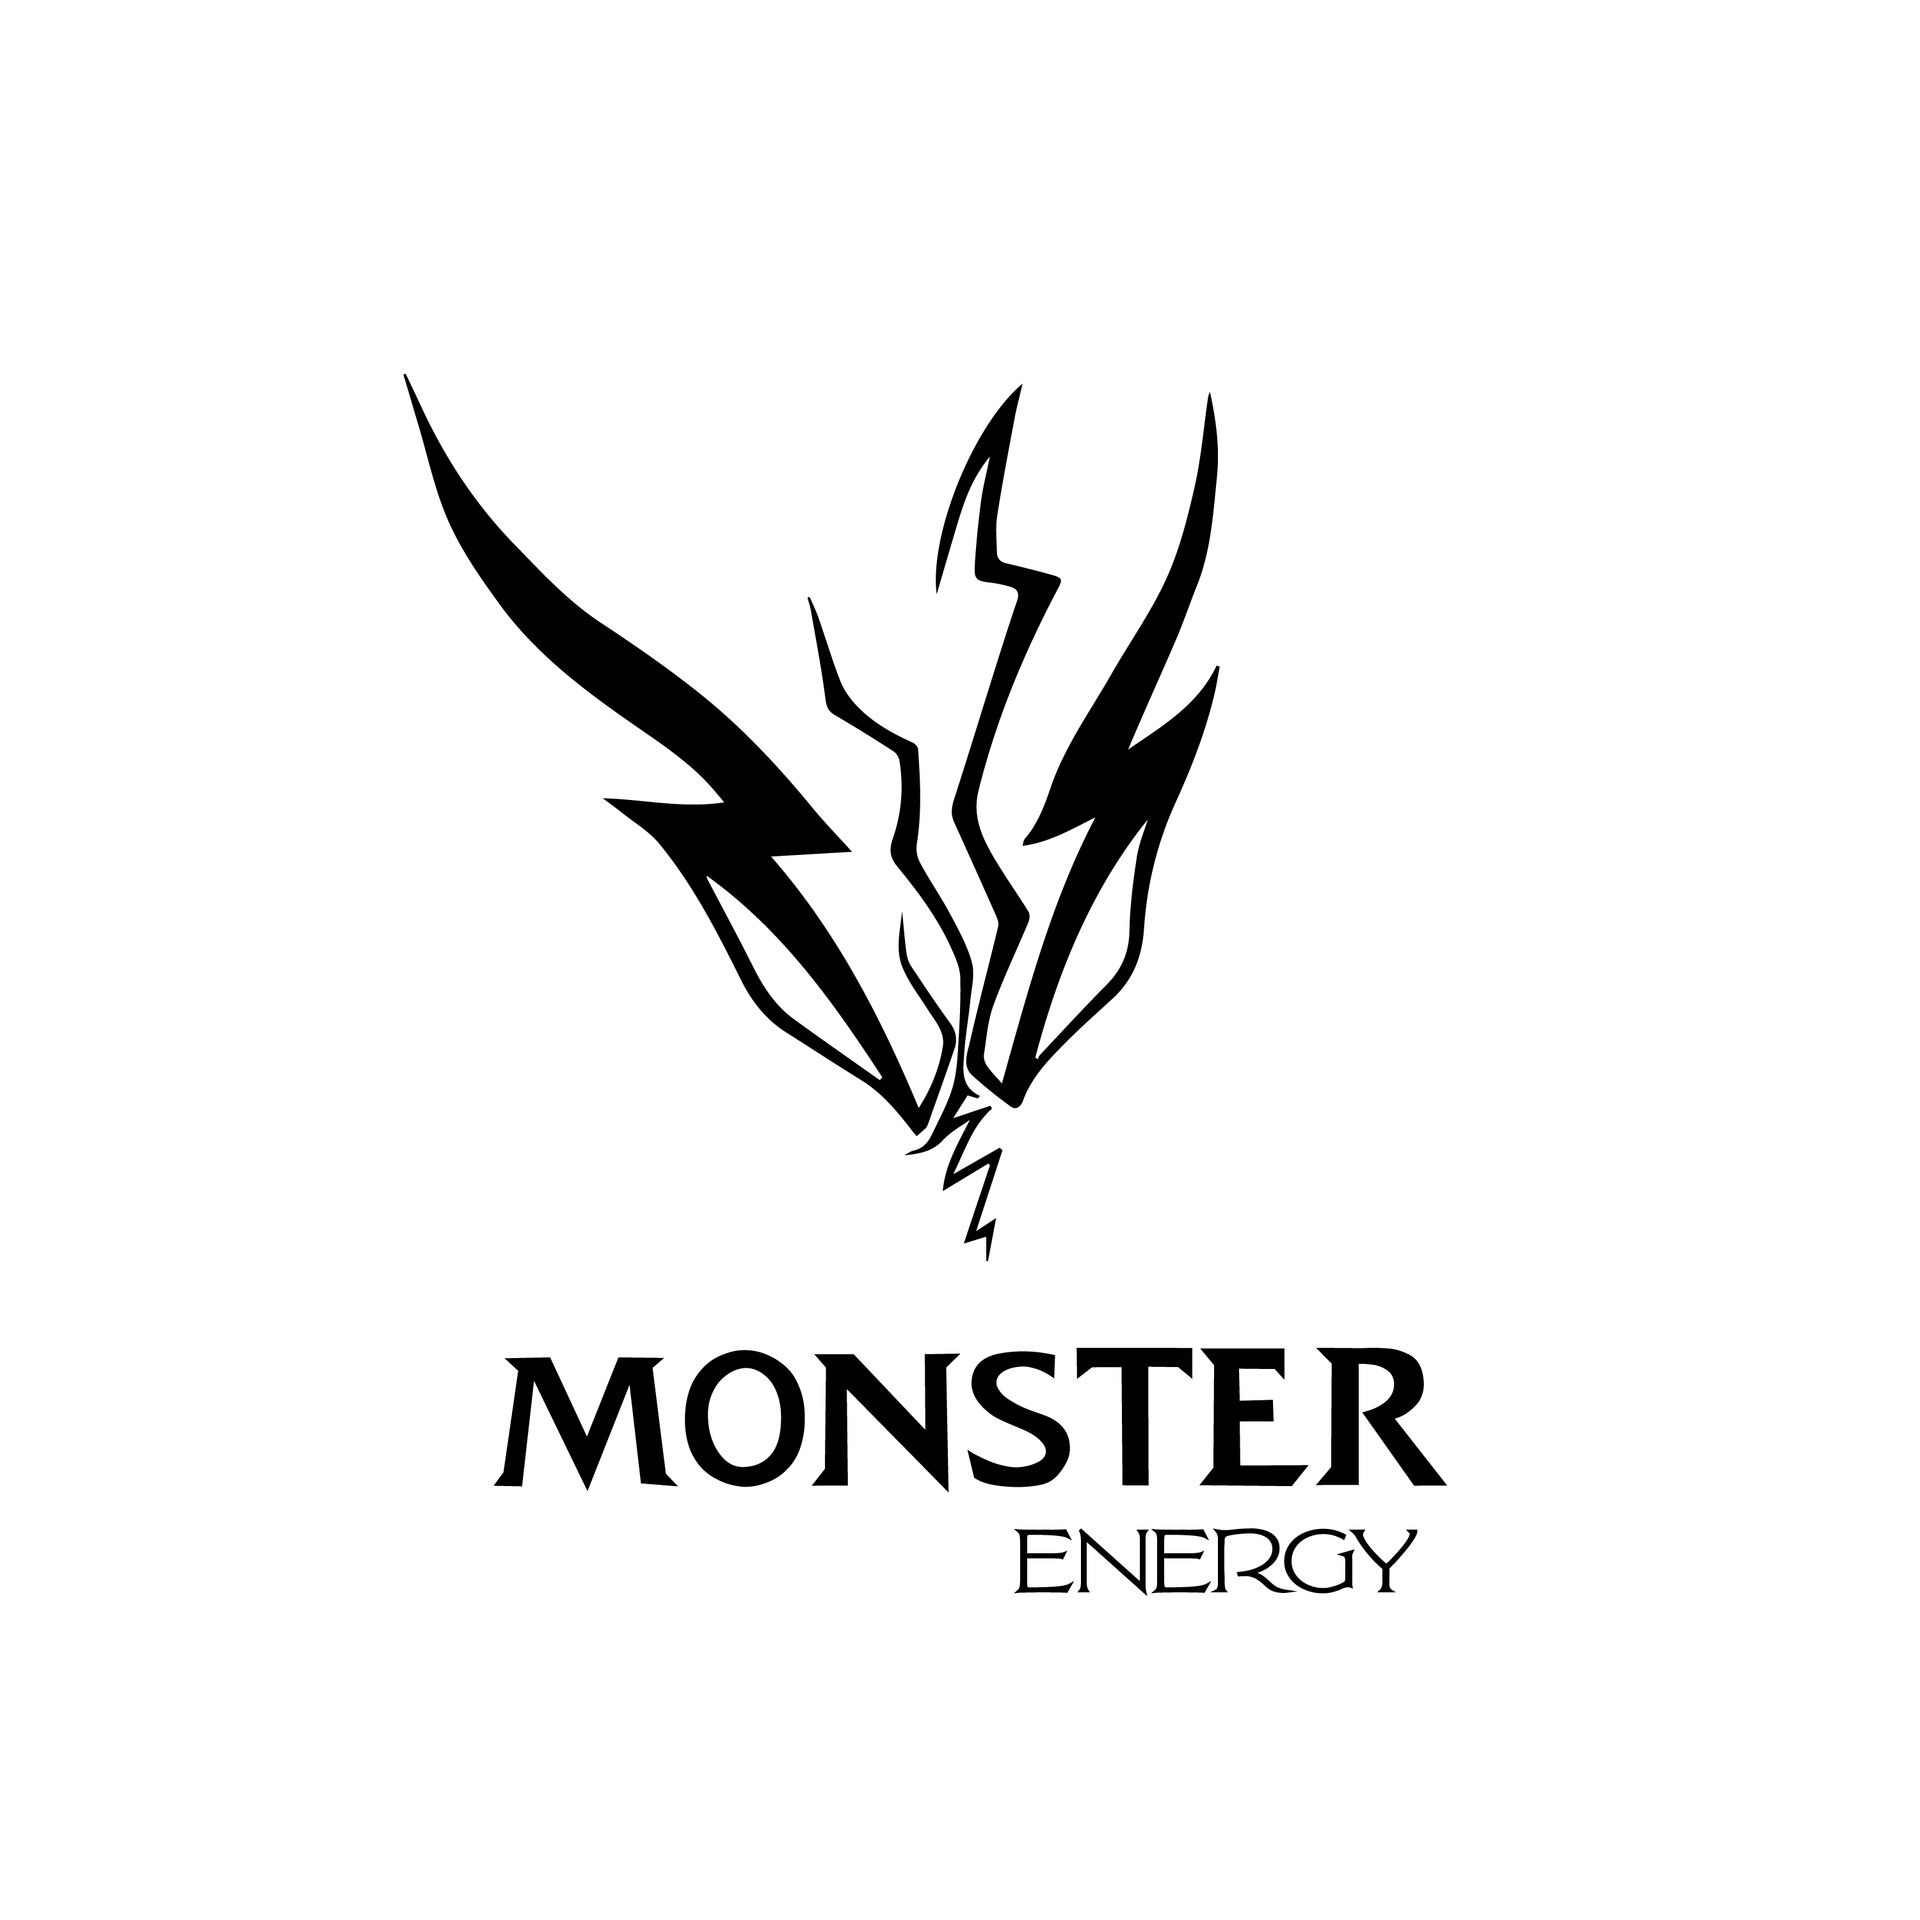 ArtStation - Monster energy logo